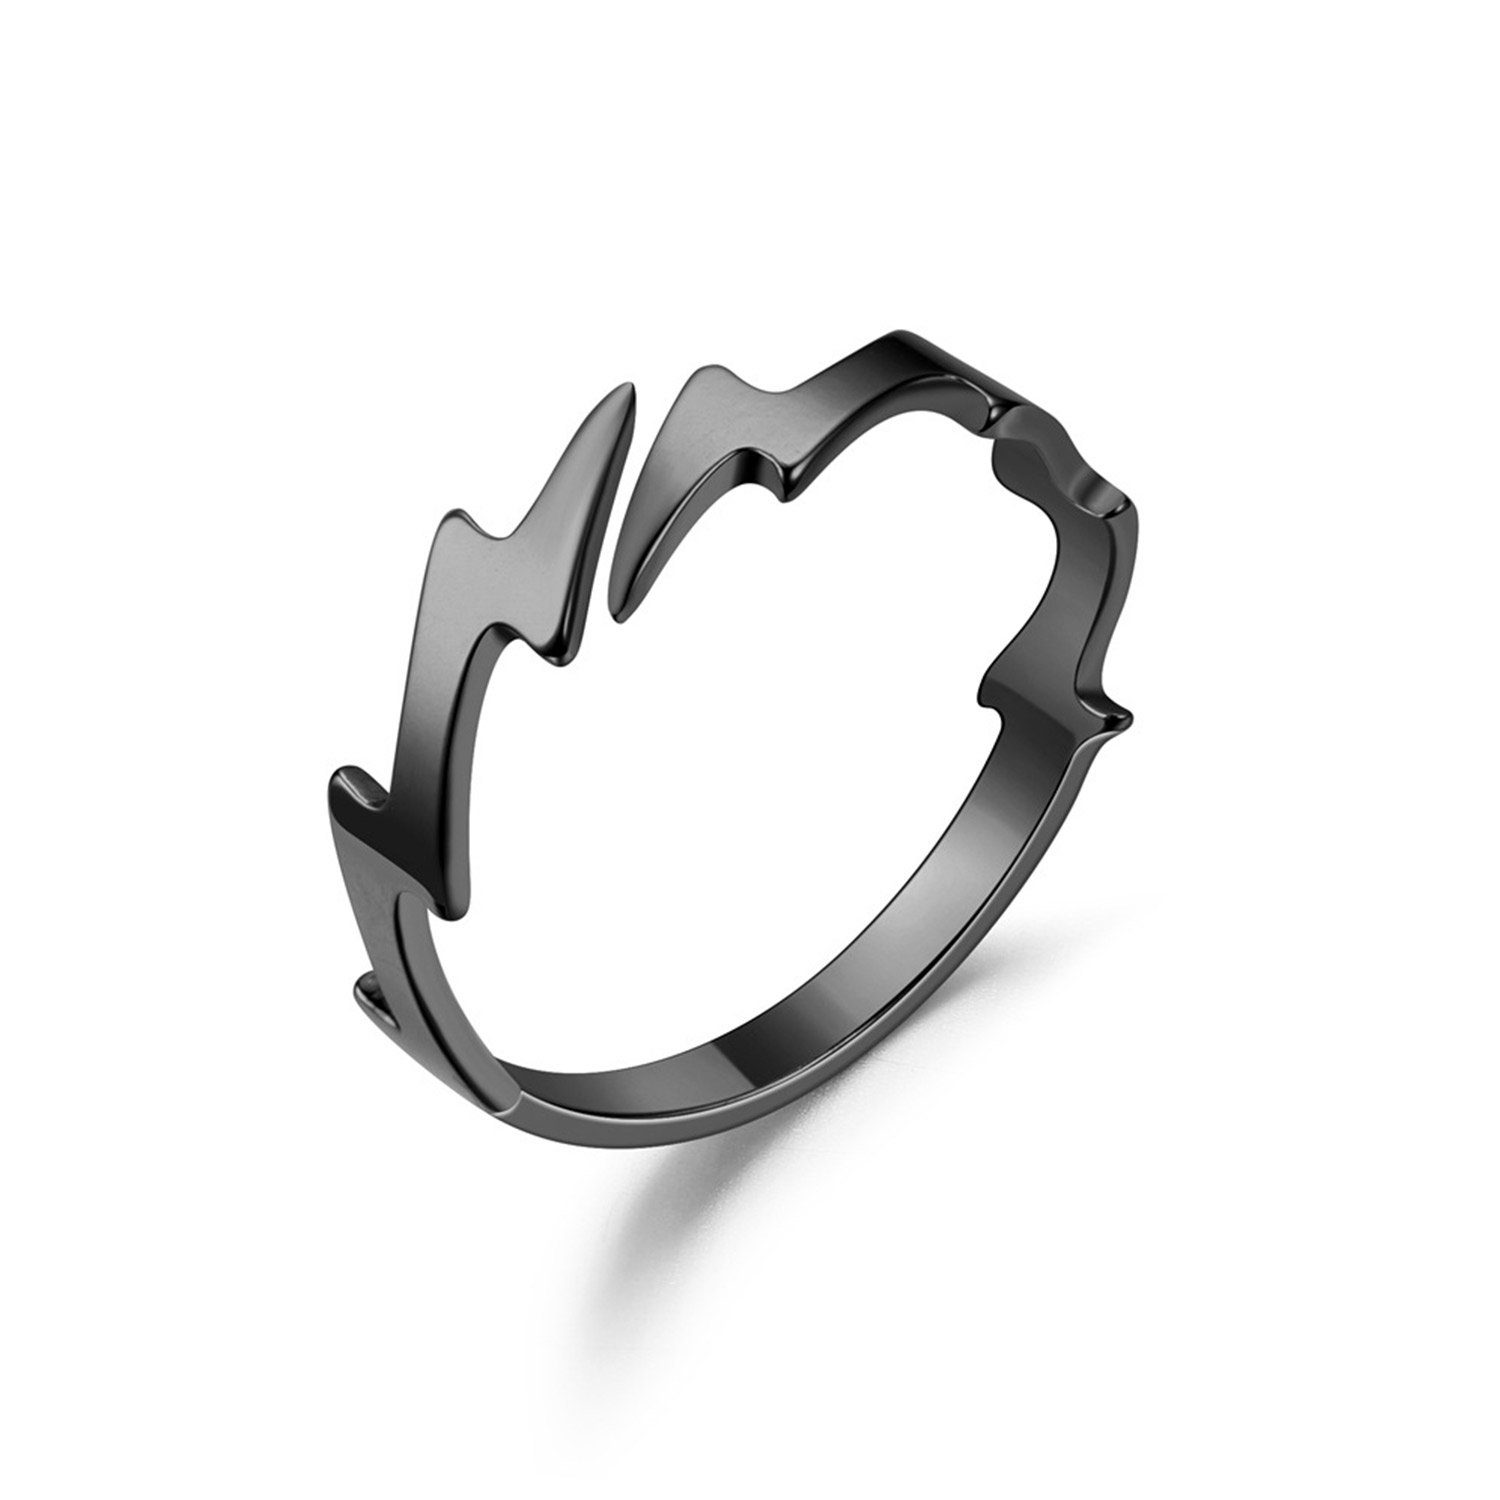 MAGICSHE Fingerring Blitz Titan Stahl offener Ring verstellbar schwarz